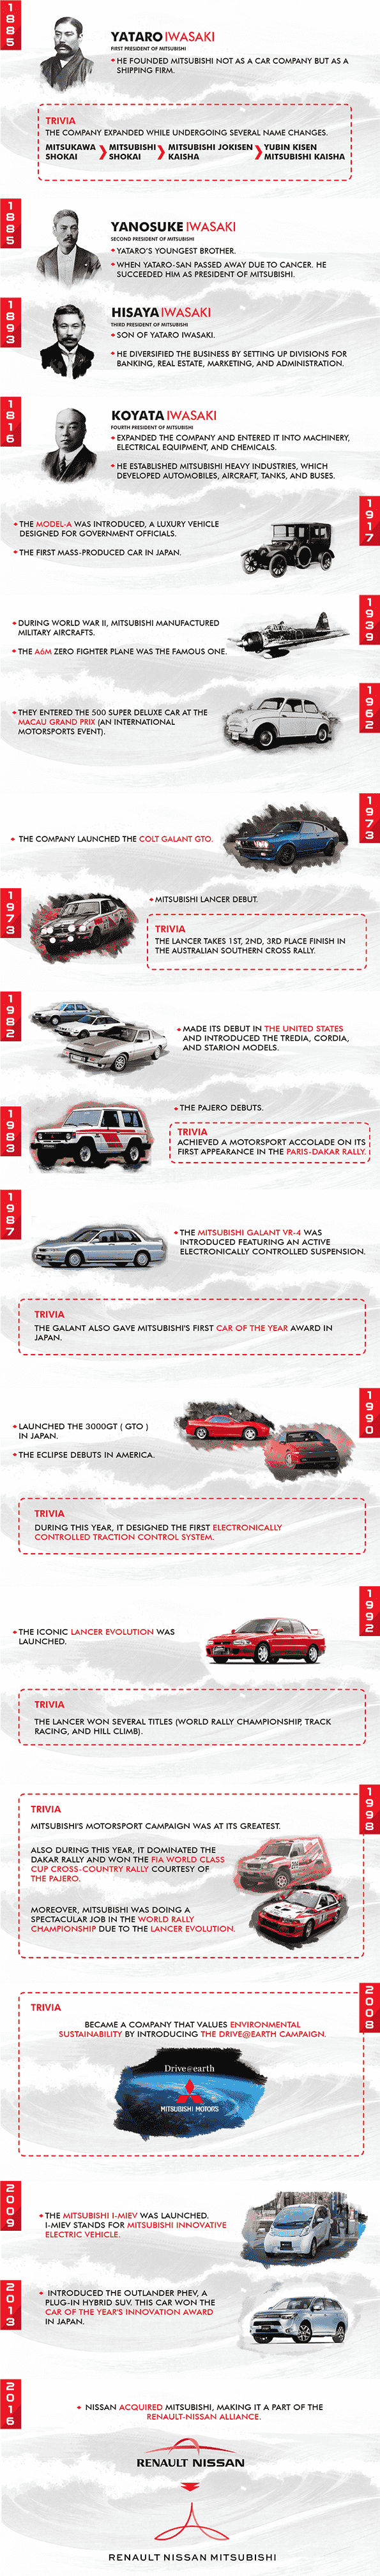 The History of Mitsubishi